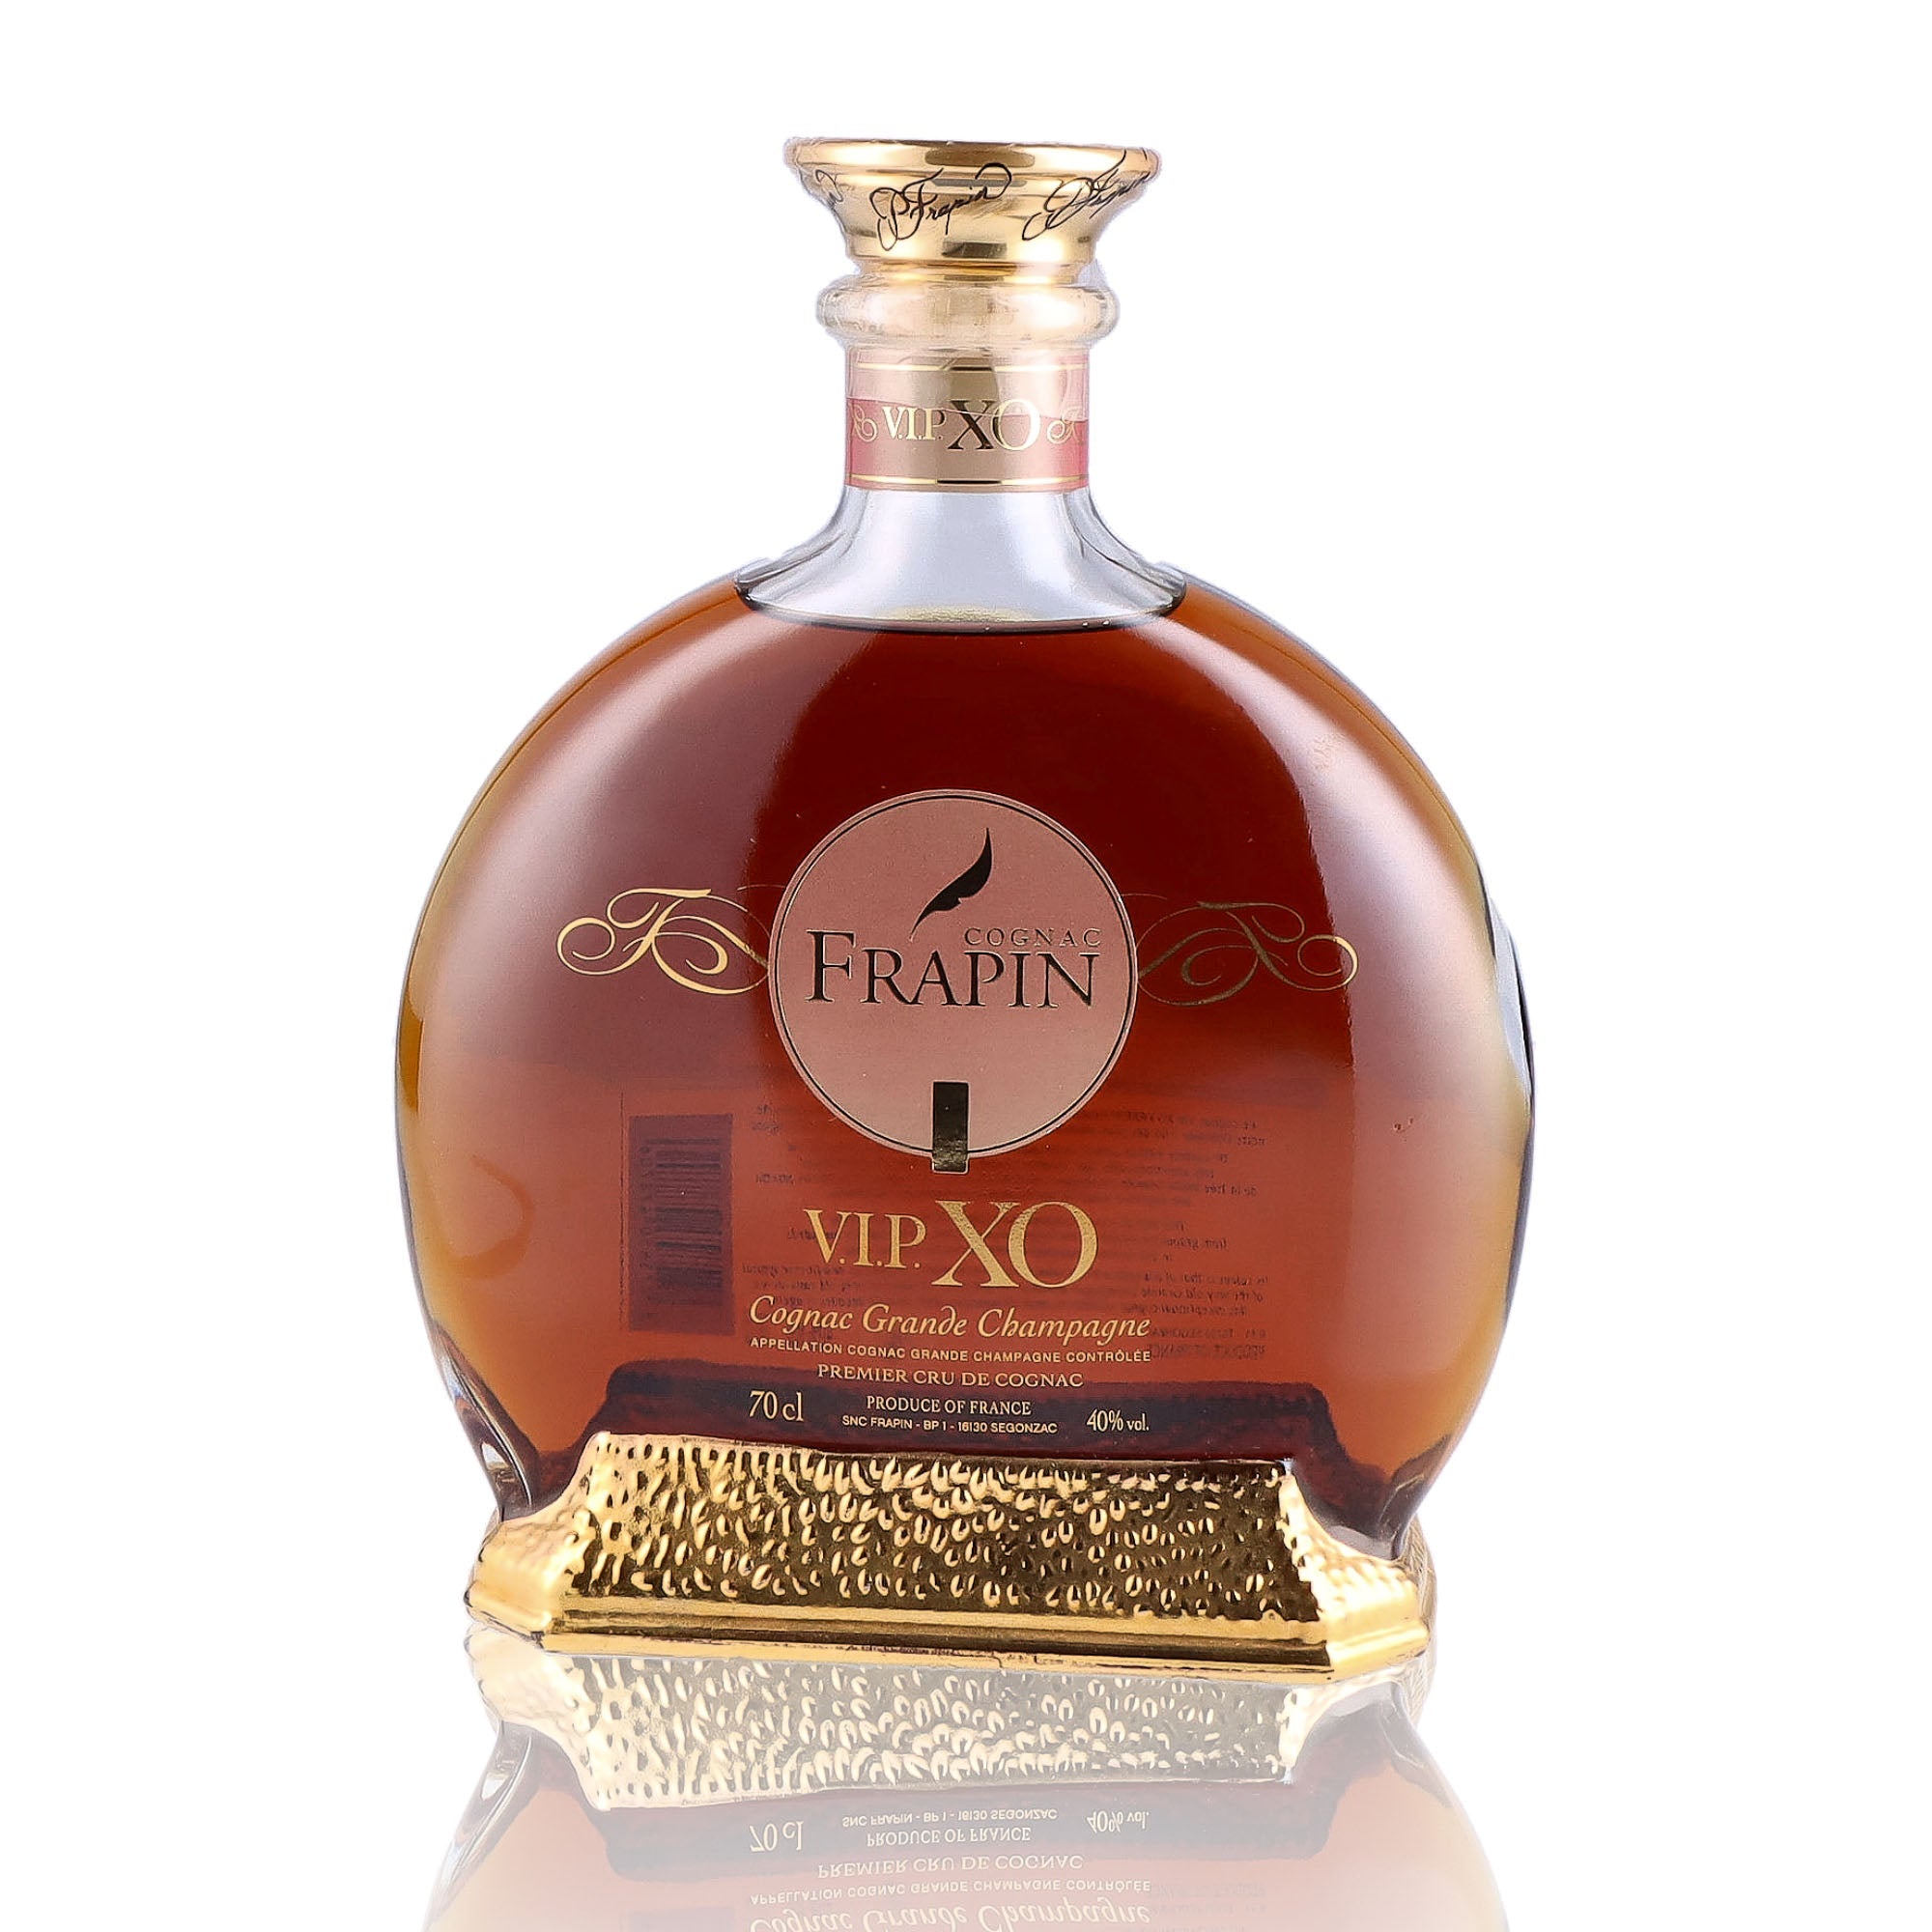 Une bouteille de Cognac, de la marque Frapin, nommée VIP XO.